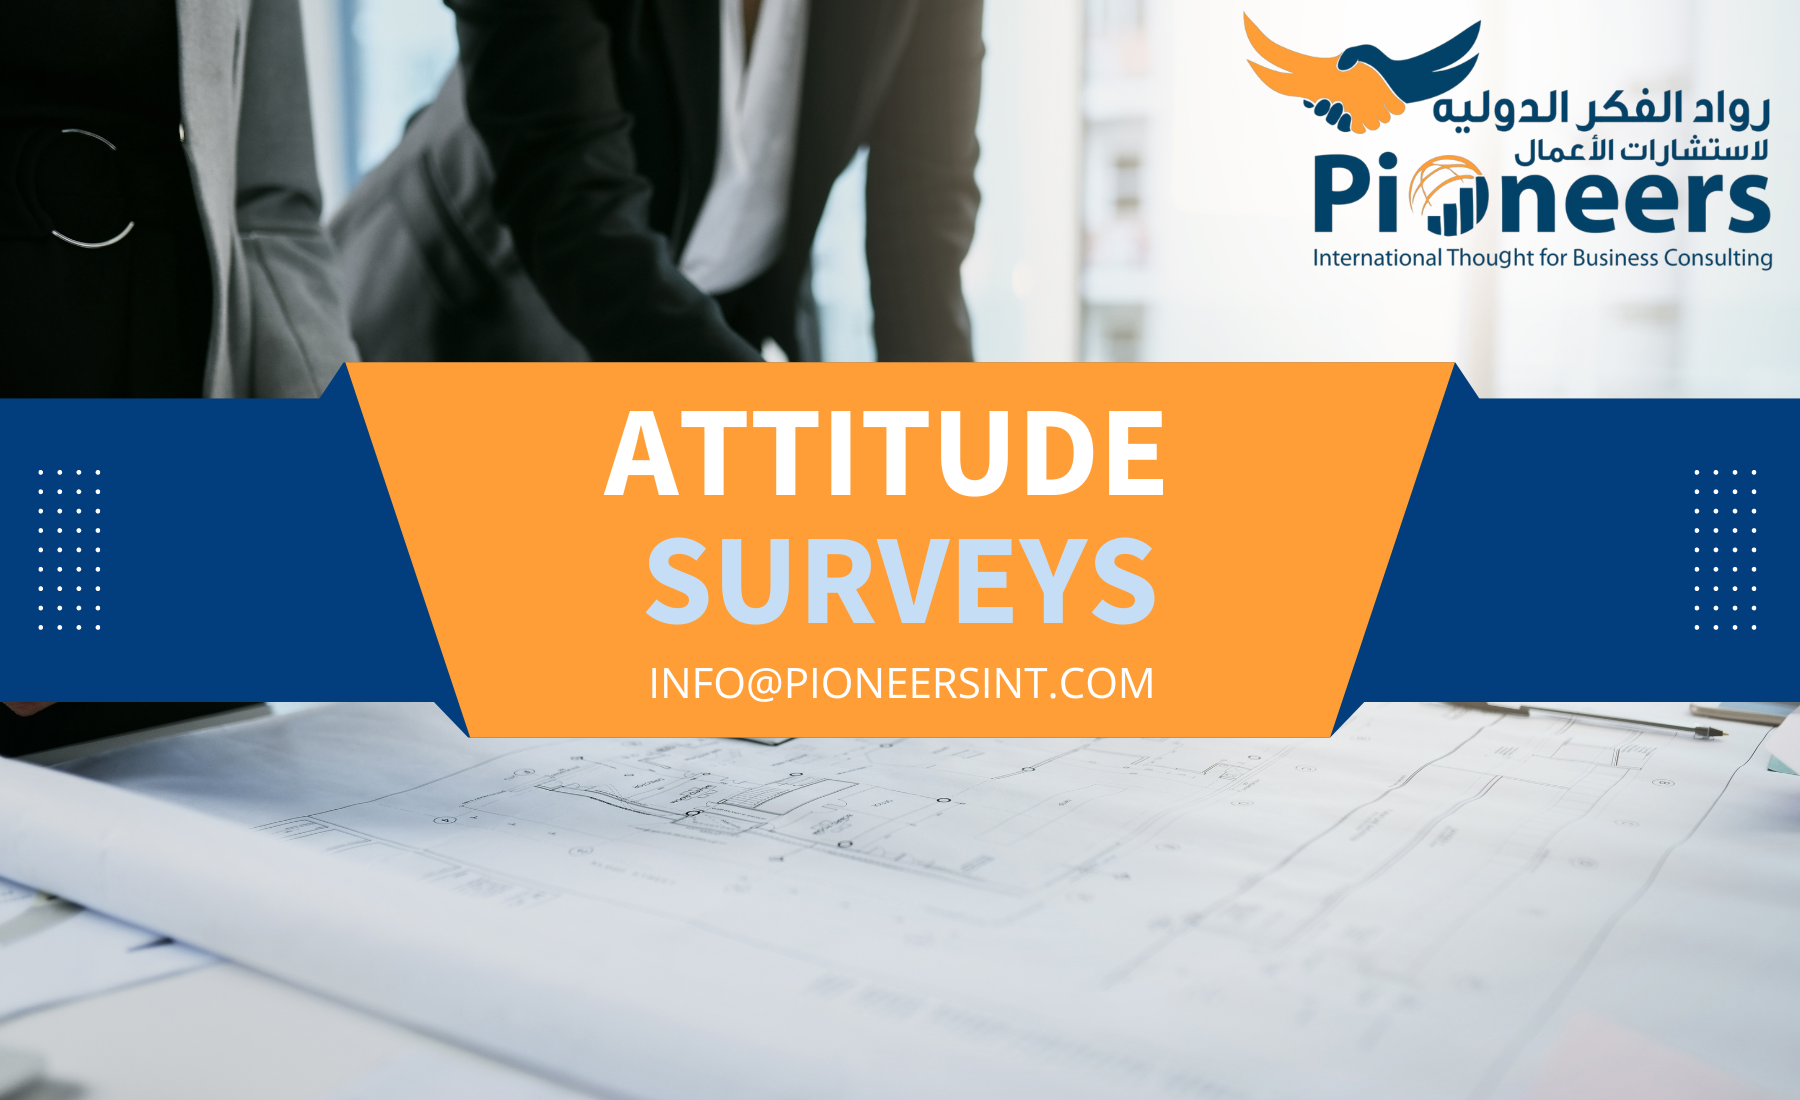 Attitude surveys